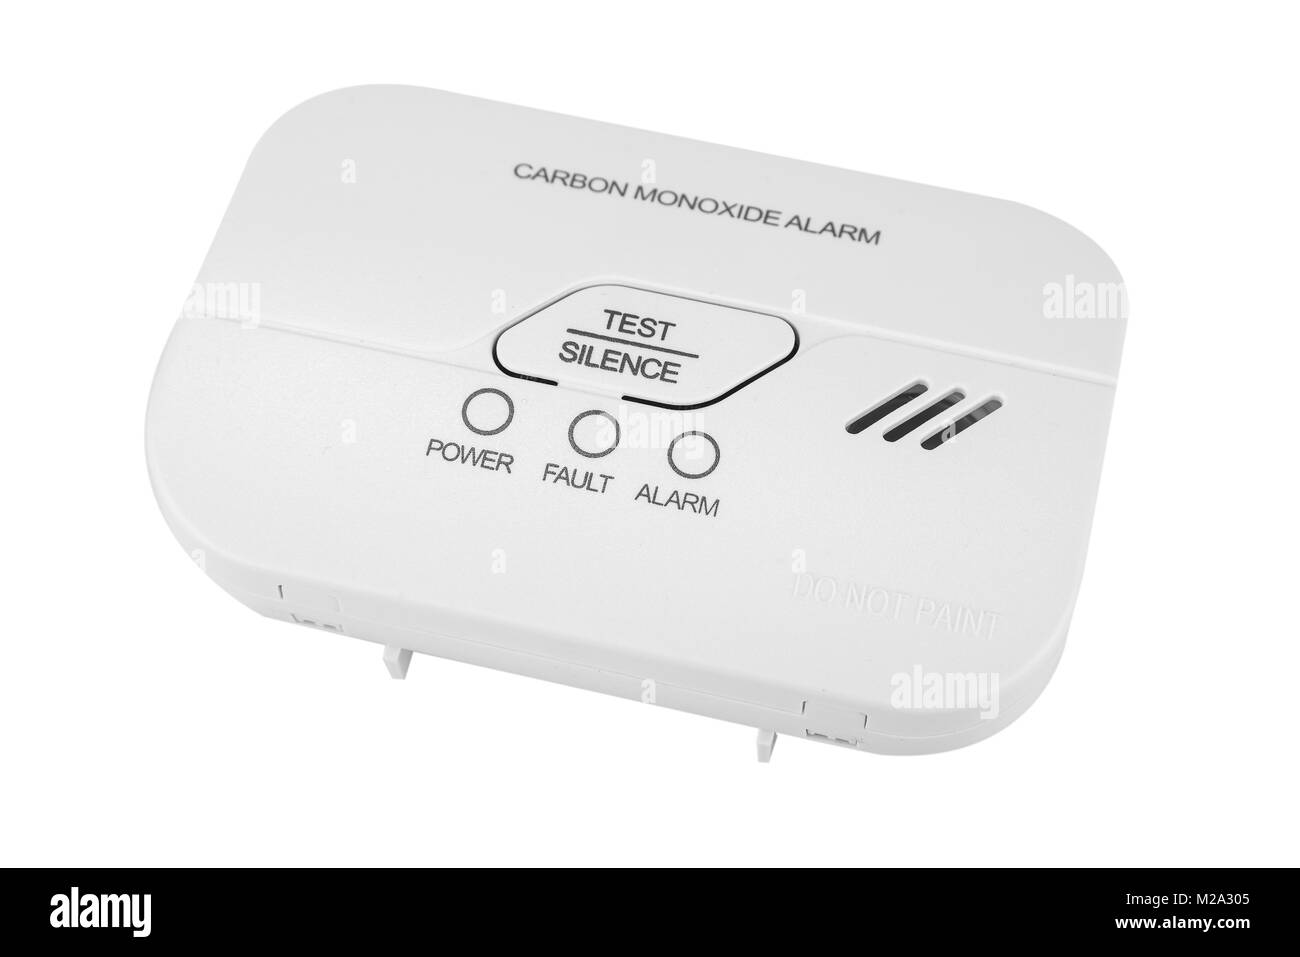 Carbon monoxide alarm for safe sleep on white Stock Photo